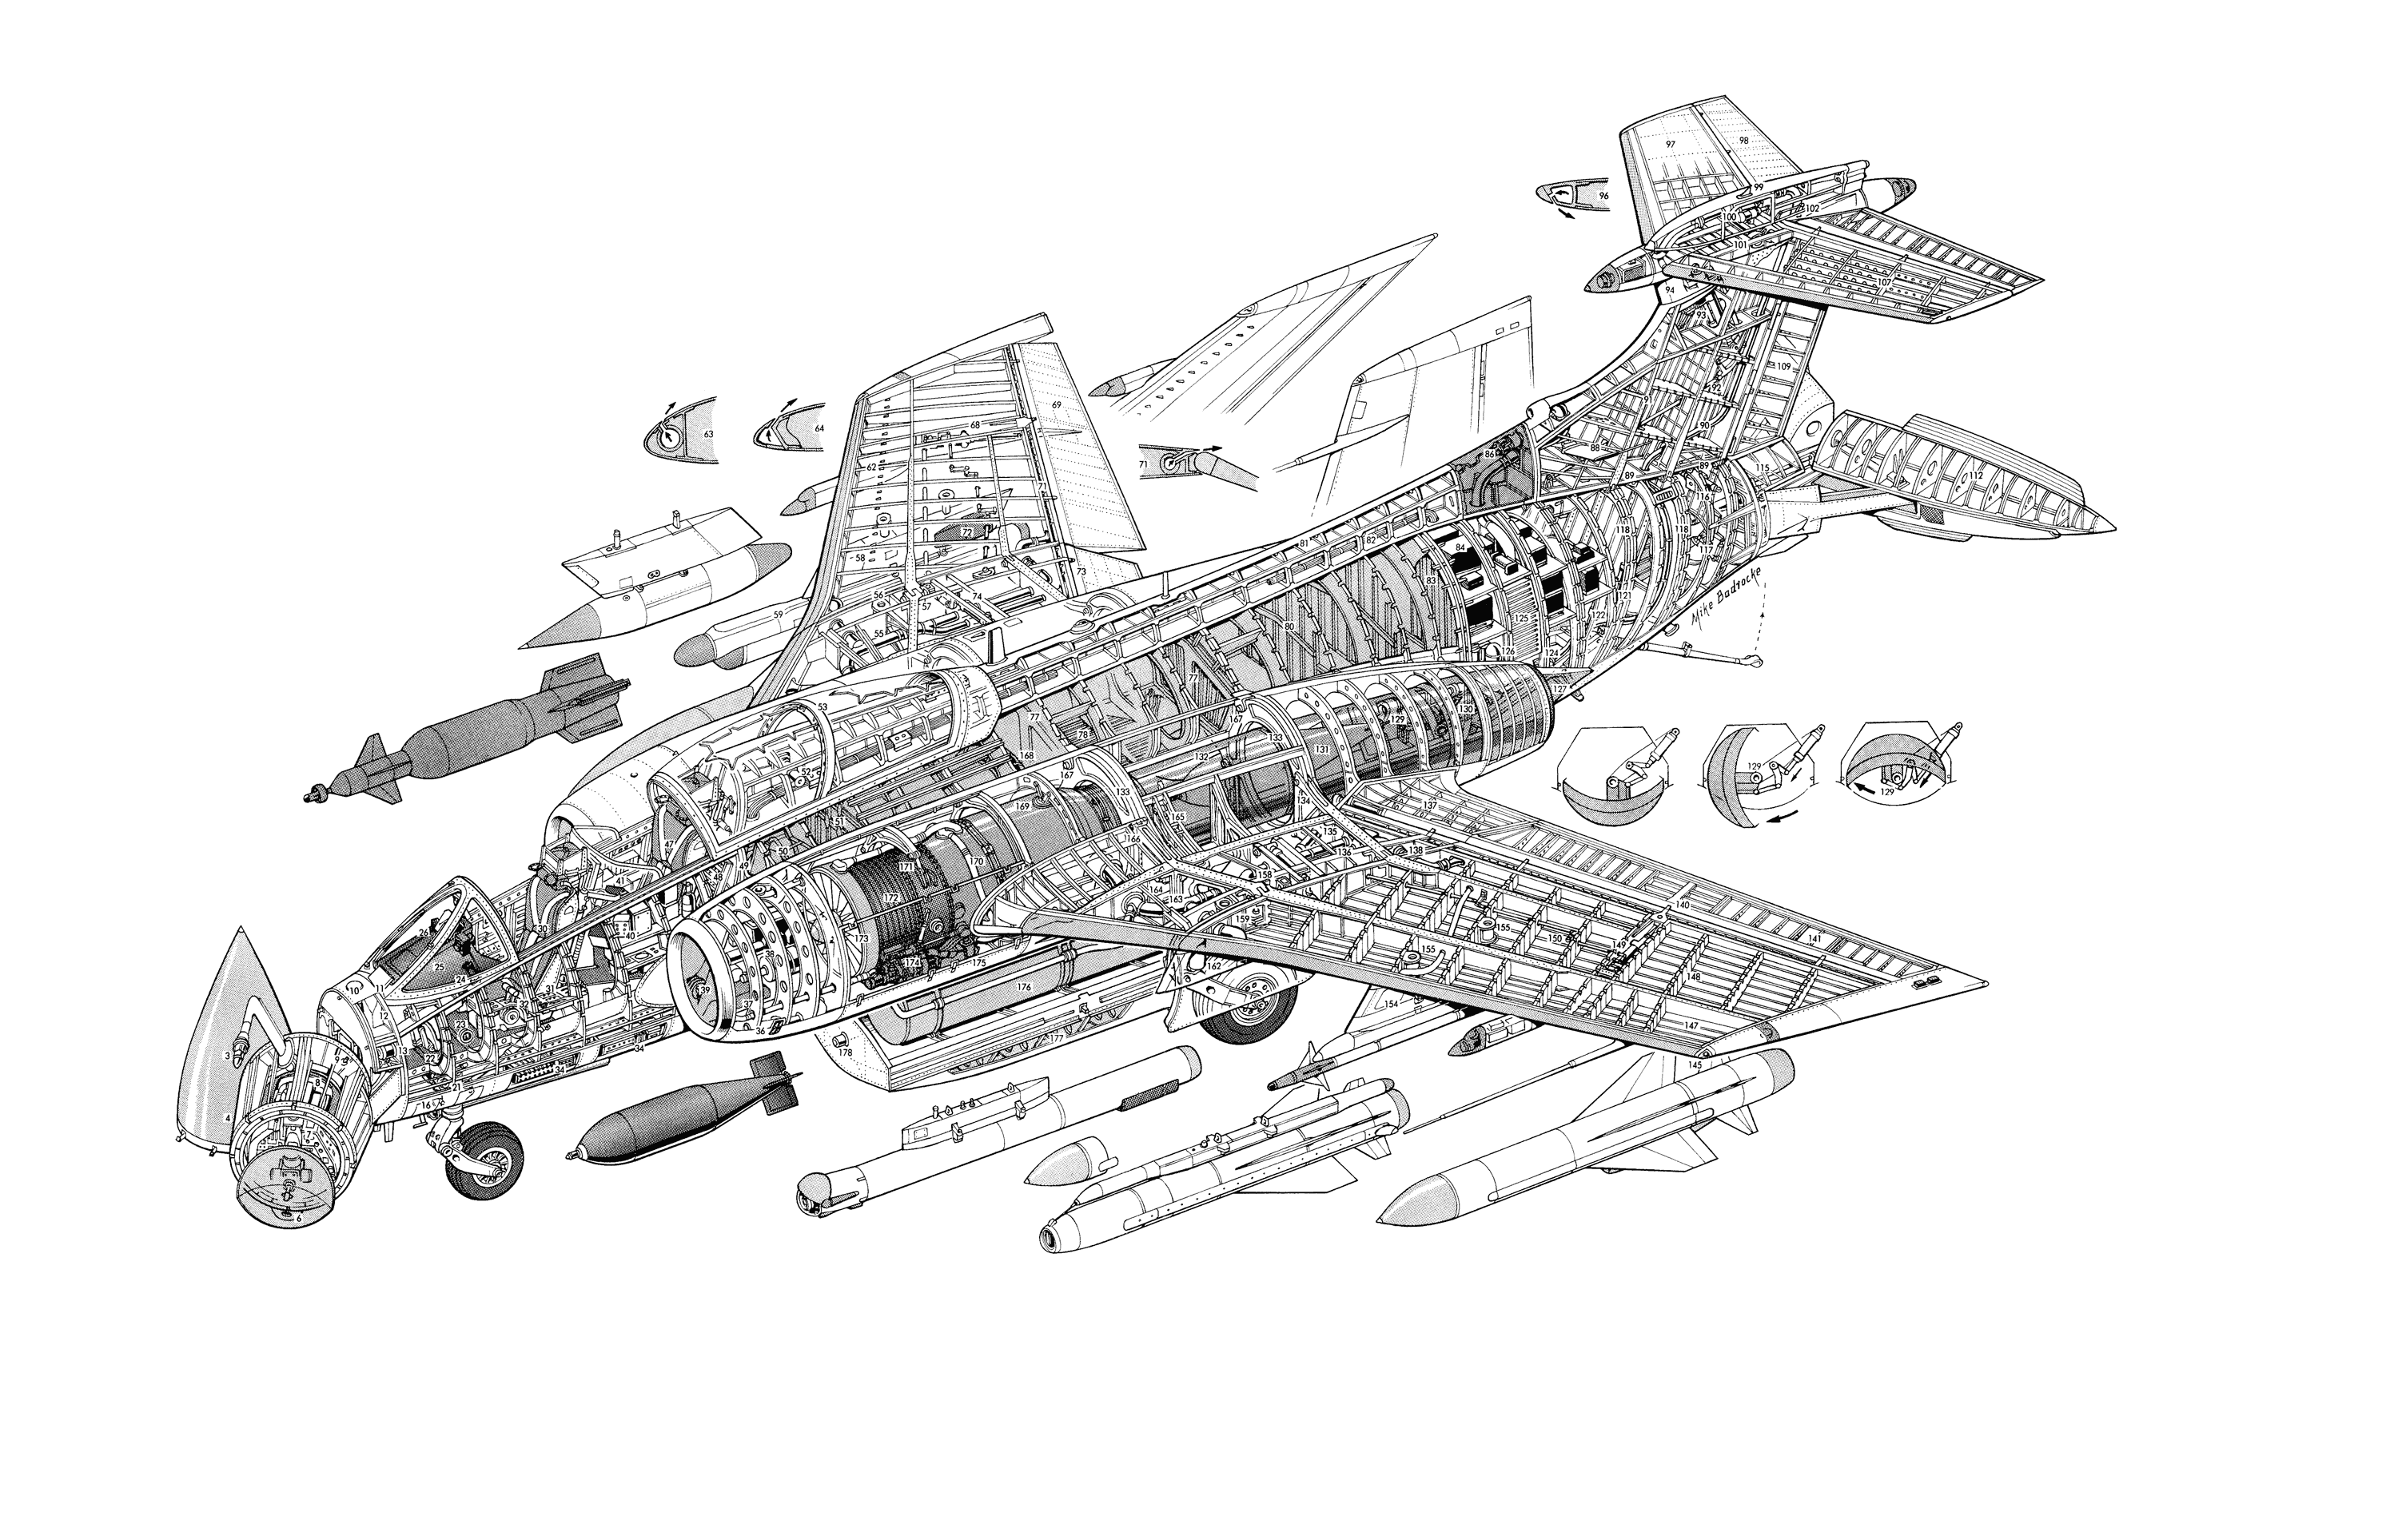 Hawker Siddeley Buccaneer cutaway drawing